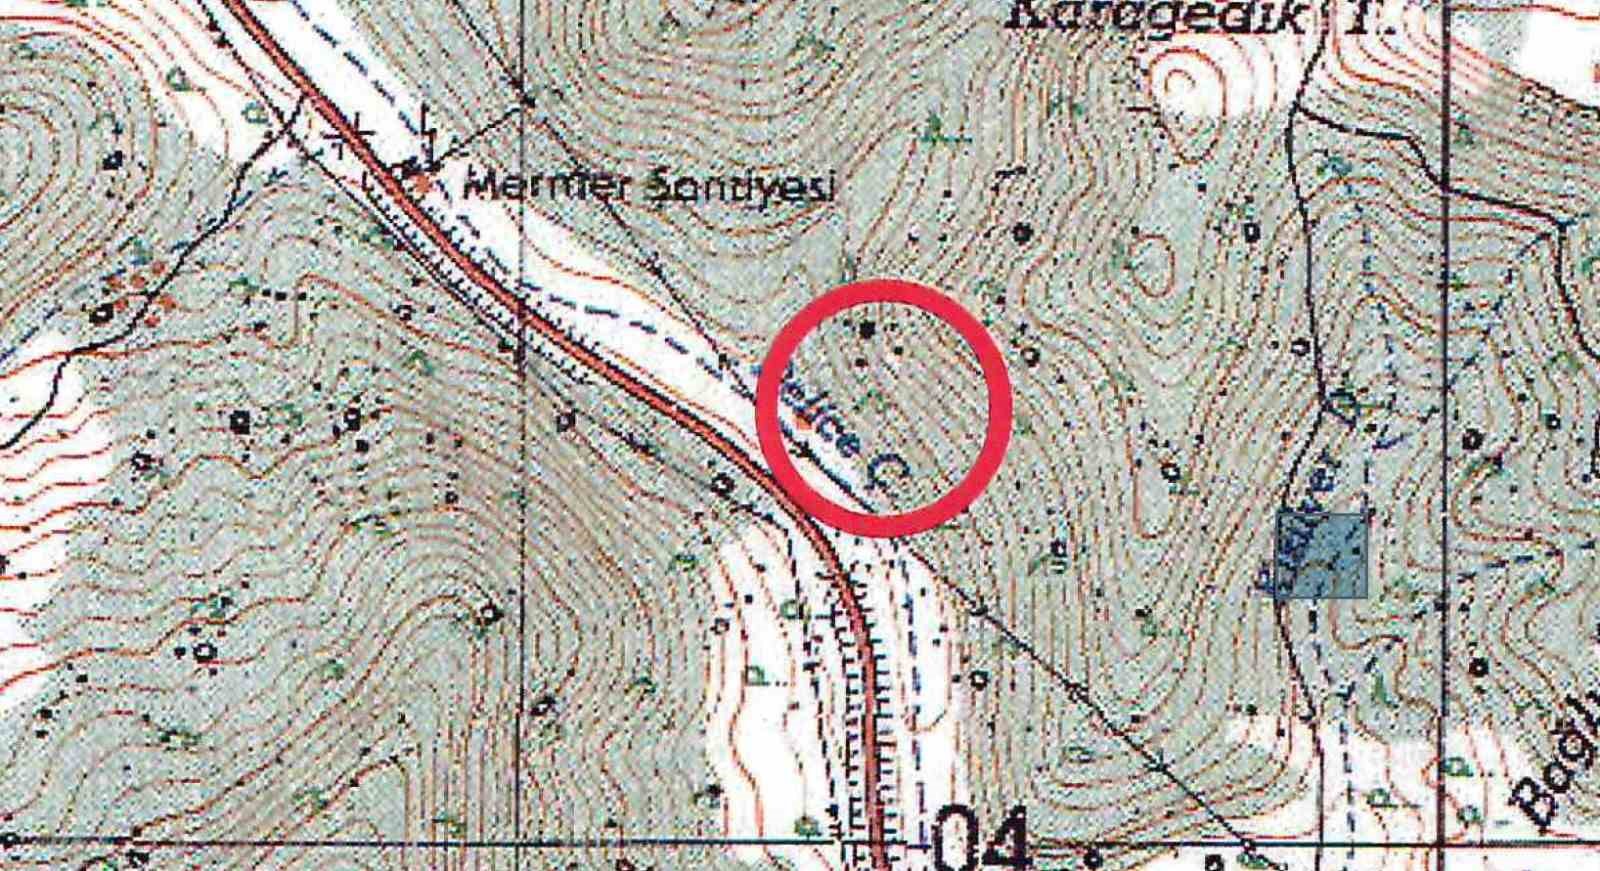 Mermer ocağının bulunduğu bölge “1. Grup Sit Koruma Alanı” ilan edildi
